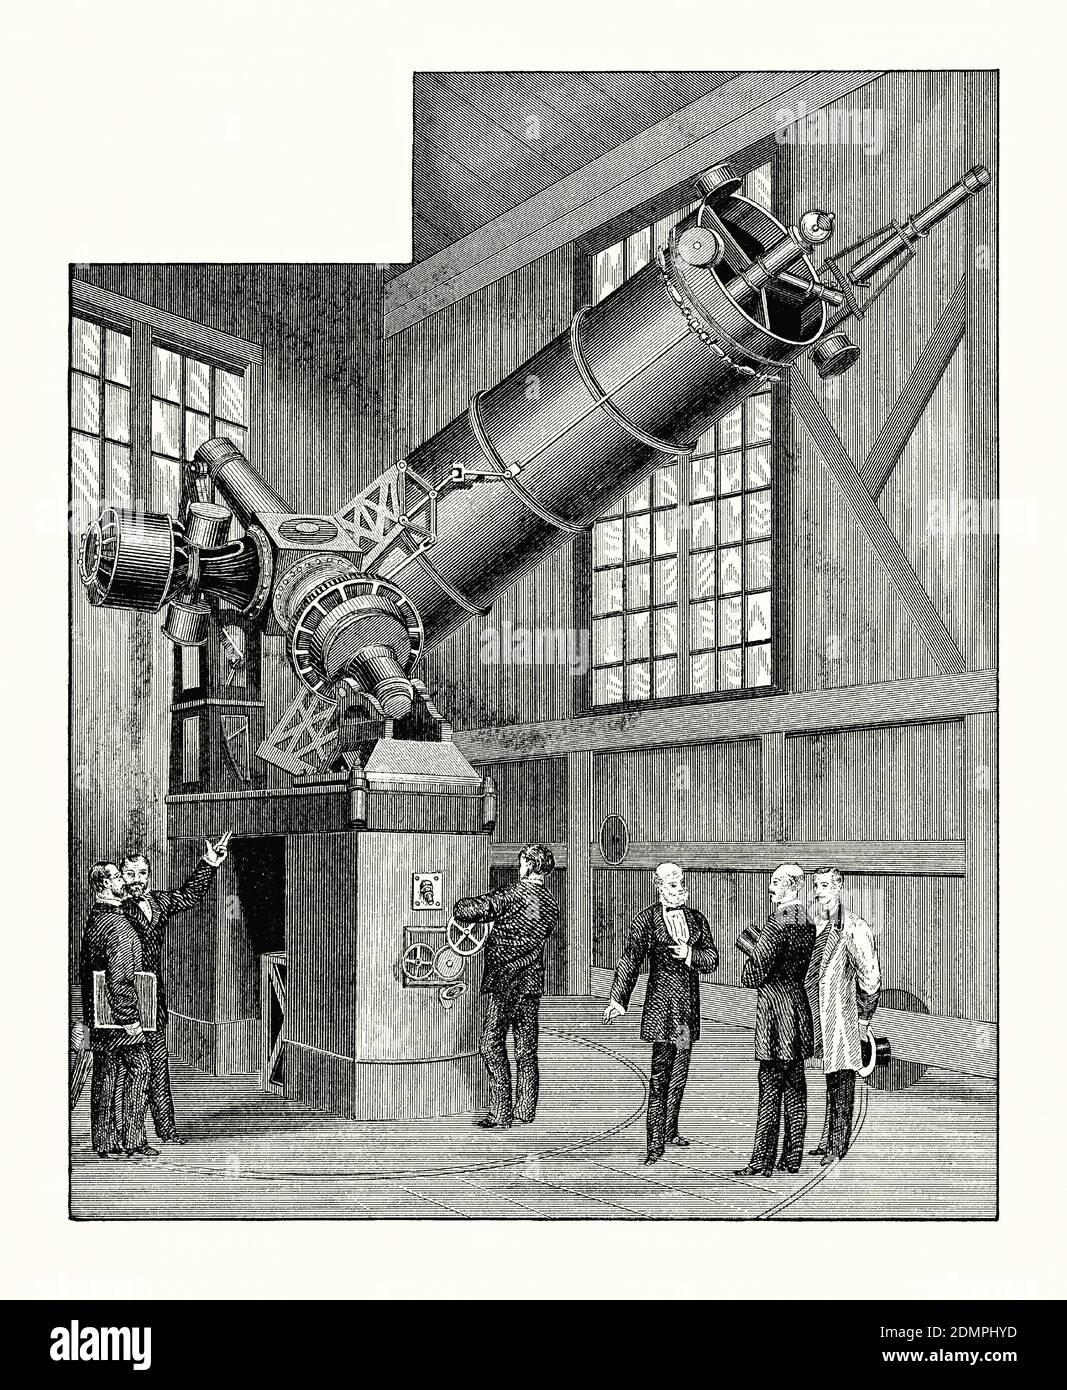 Una vecchia incisione che mostra osservatori al ‘Grande telescopio riflettente’ di Parigi, Francia circa 1880. E 'da un libro vittoriano del 1880. Un telescopio riflettente (riflettore) è un telescopio che utilizza un singolo o una combinazione di specchi curvi che riflettono la luce e formano un'immagine. Il telescopio riflettente è stato inventato da Isaac Newton. Poiché i telescopi riflettenti utilizzano specchi, il progetto viene talvolta definito ‘telescopio catoptrico’. Il telescopio installato all'Osservatorio di Parigi nel 1878 utilizzava uno specchio di vetro parabolico alla sua base e la parte mobile pesava circa 9 tonnellate (8000 kg). Foto Stock